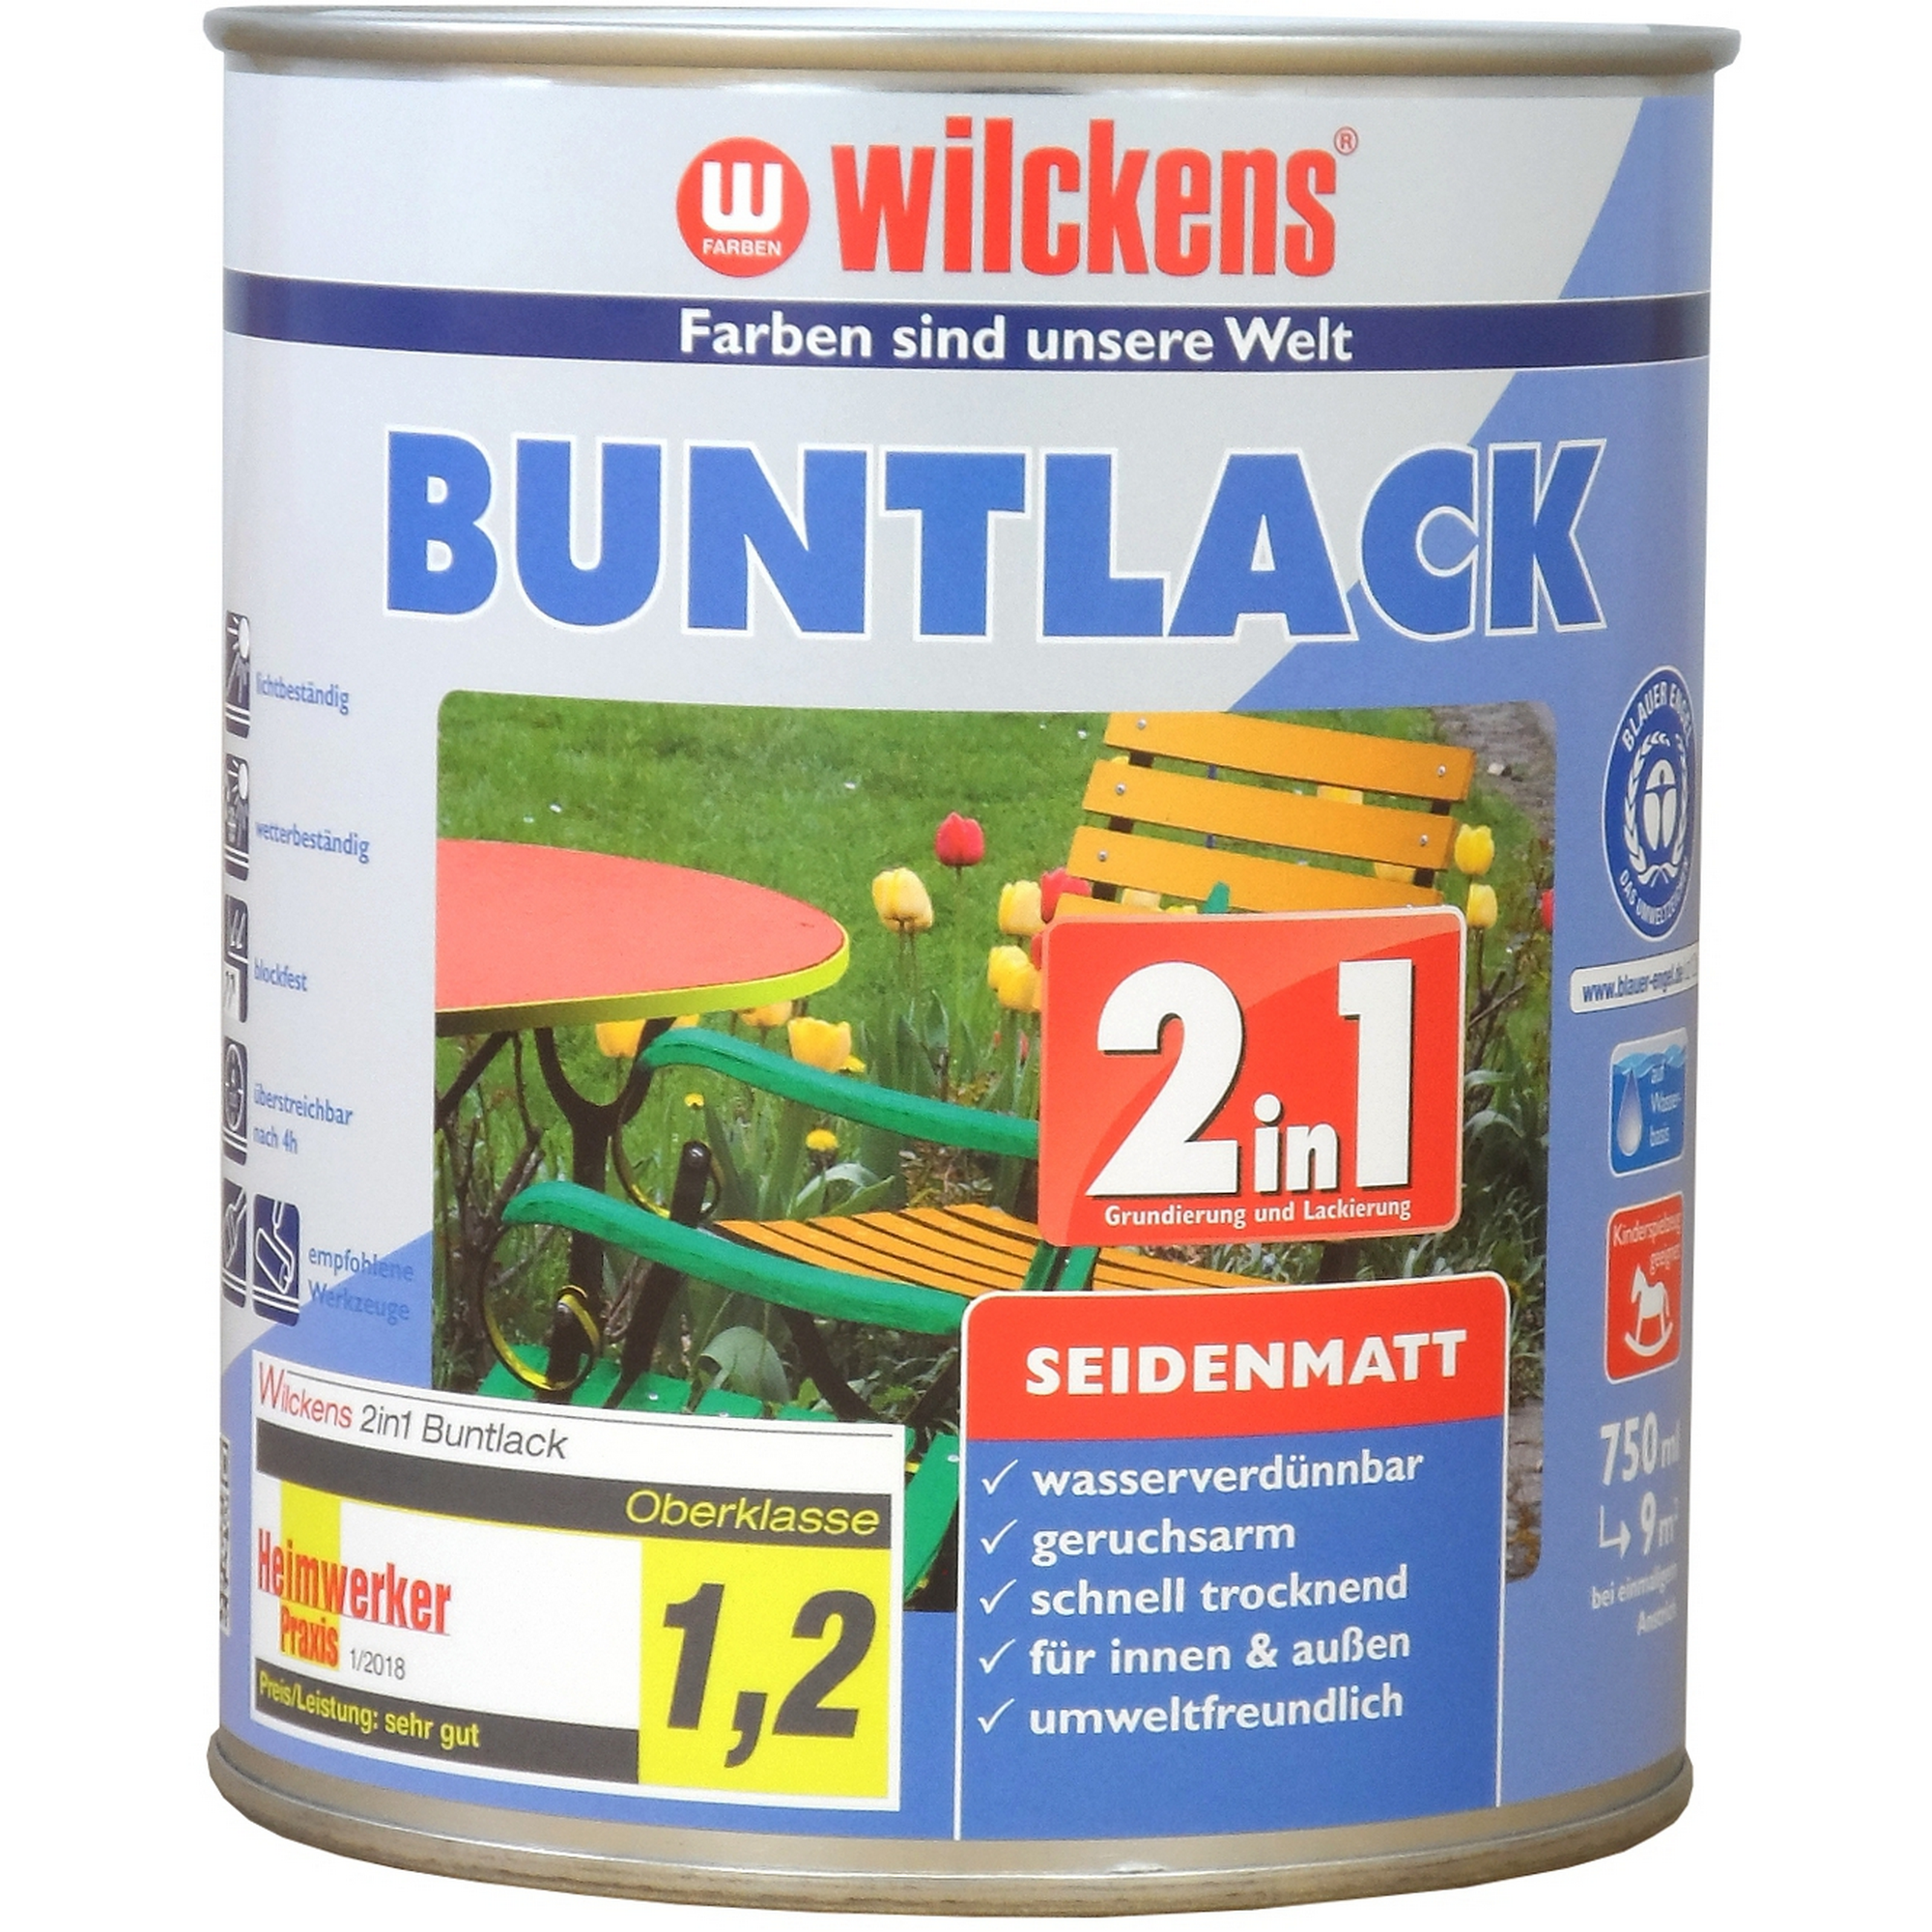 2in1 Buntlack enzianblau seidenmatt 750 ml + product picture